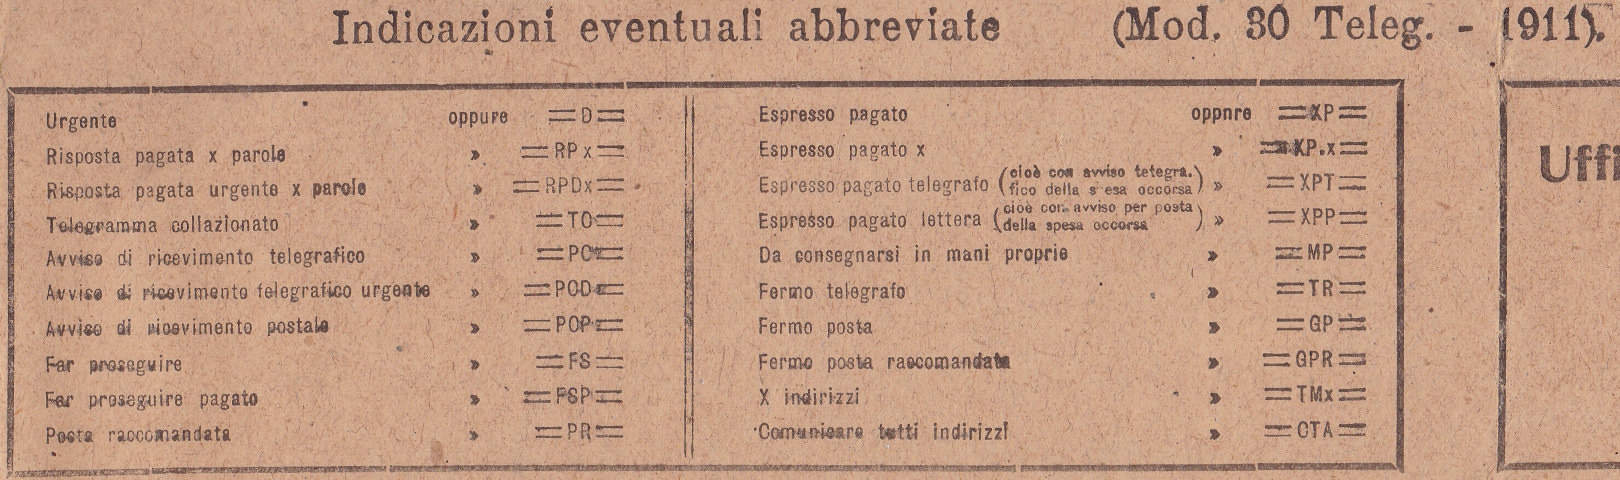 Verona 1911 abbreviations